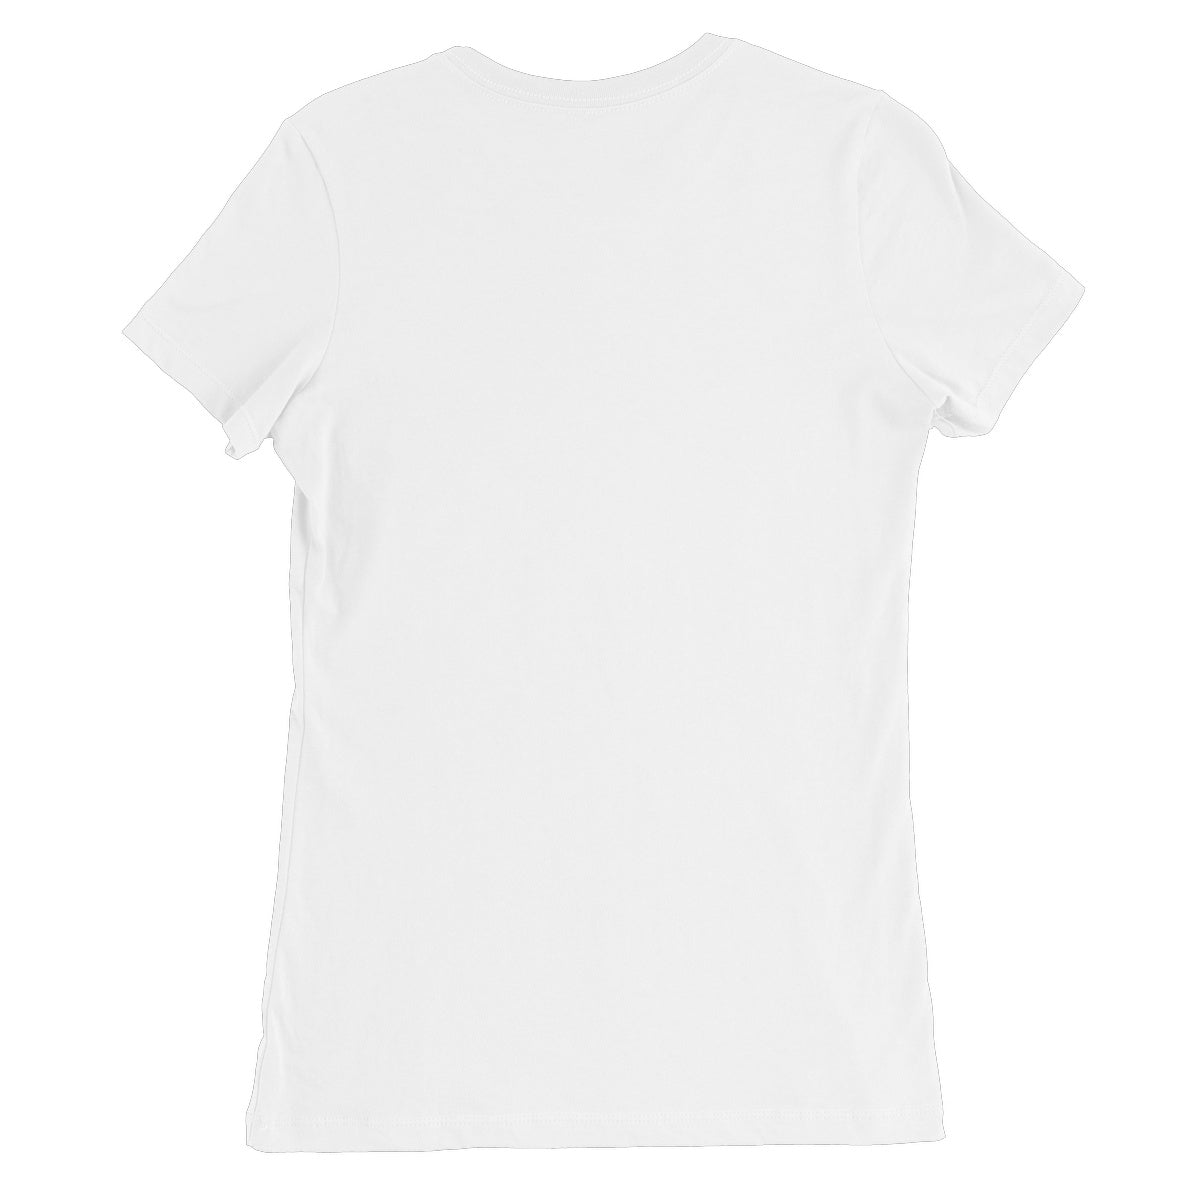 AQUA HMP2 - 05 - Kids - Women's Fine Jersey T-Shirt